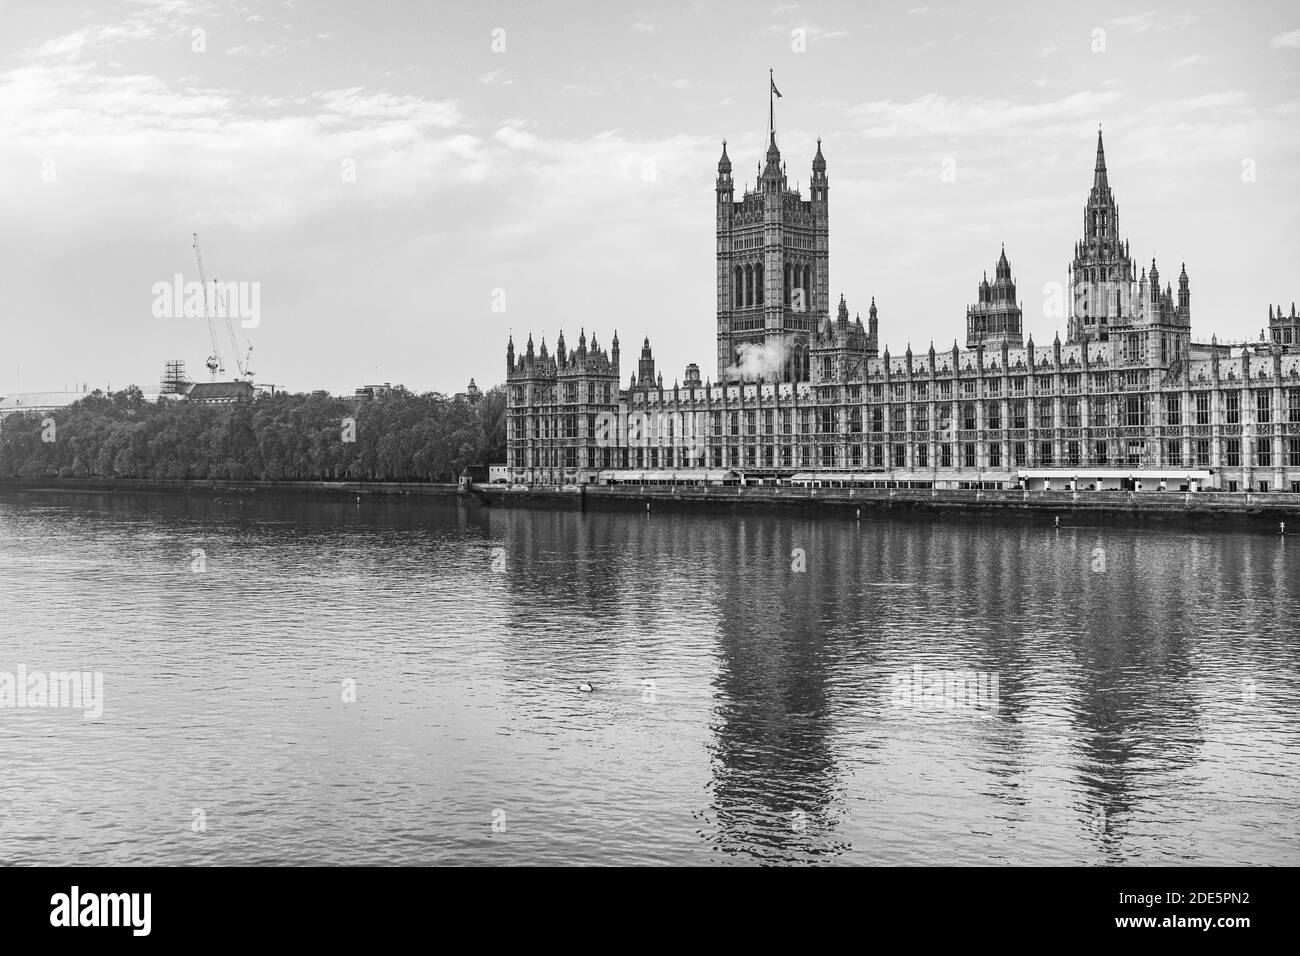 Schwarz-weiße Houses of Parliament, das ikonische Londoner Gebäude und Touristenattraktion mit der Themse, aufgenommen in Coronavirus Covid-19 Lockdown in England, Großbritannien Stockfoto